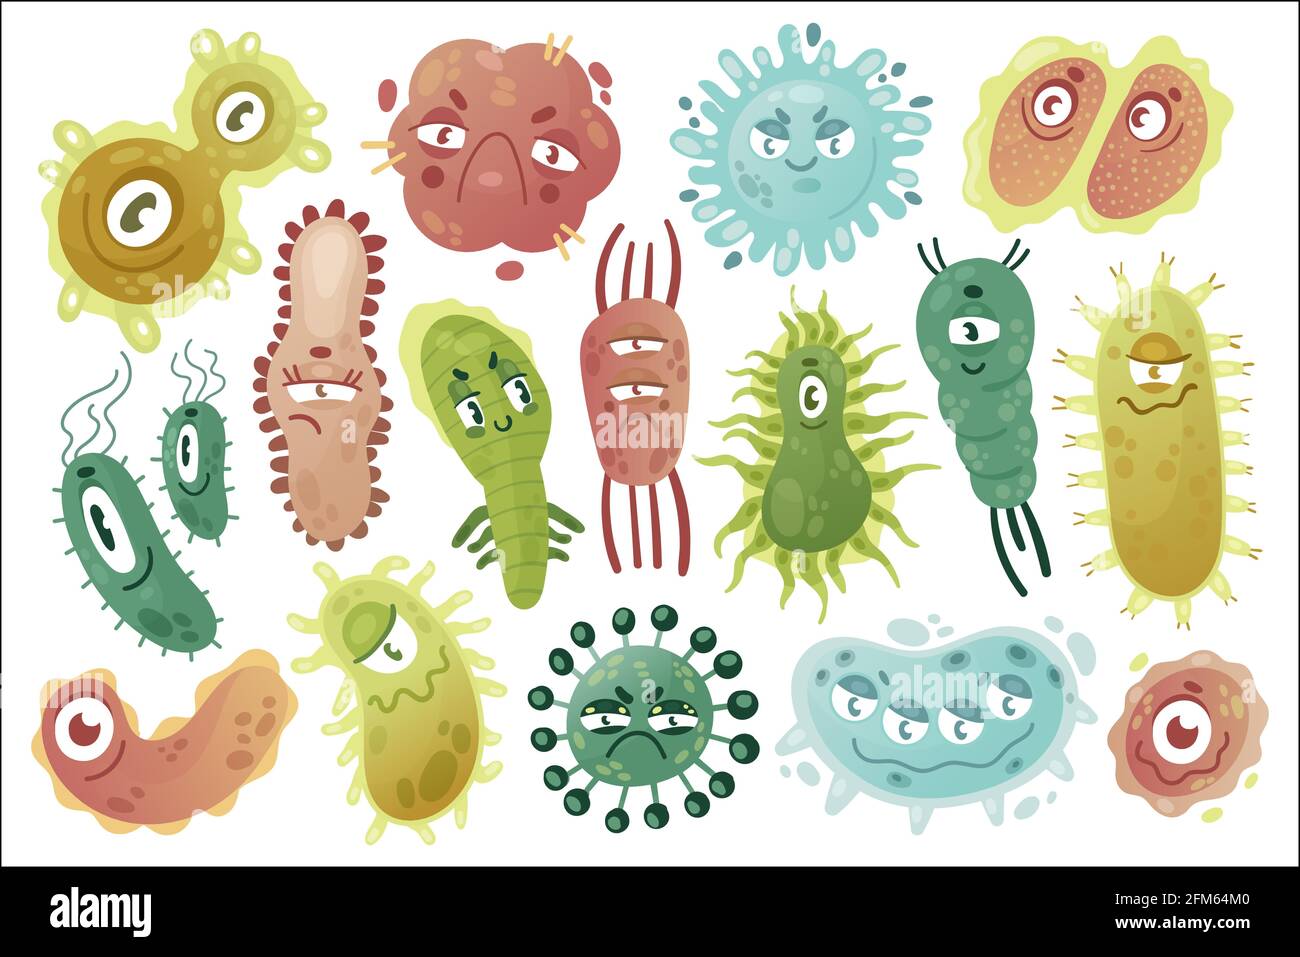 Germi, simpatico divertente e colorato insieme di illustrazione vettoriale. Cartoon comic germs malattia microrganismo creatura collezione di personaggi, kawaii microbi virus batteri patogeni con facce divertenti isolato su bianco Illustrazione Vettoriale